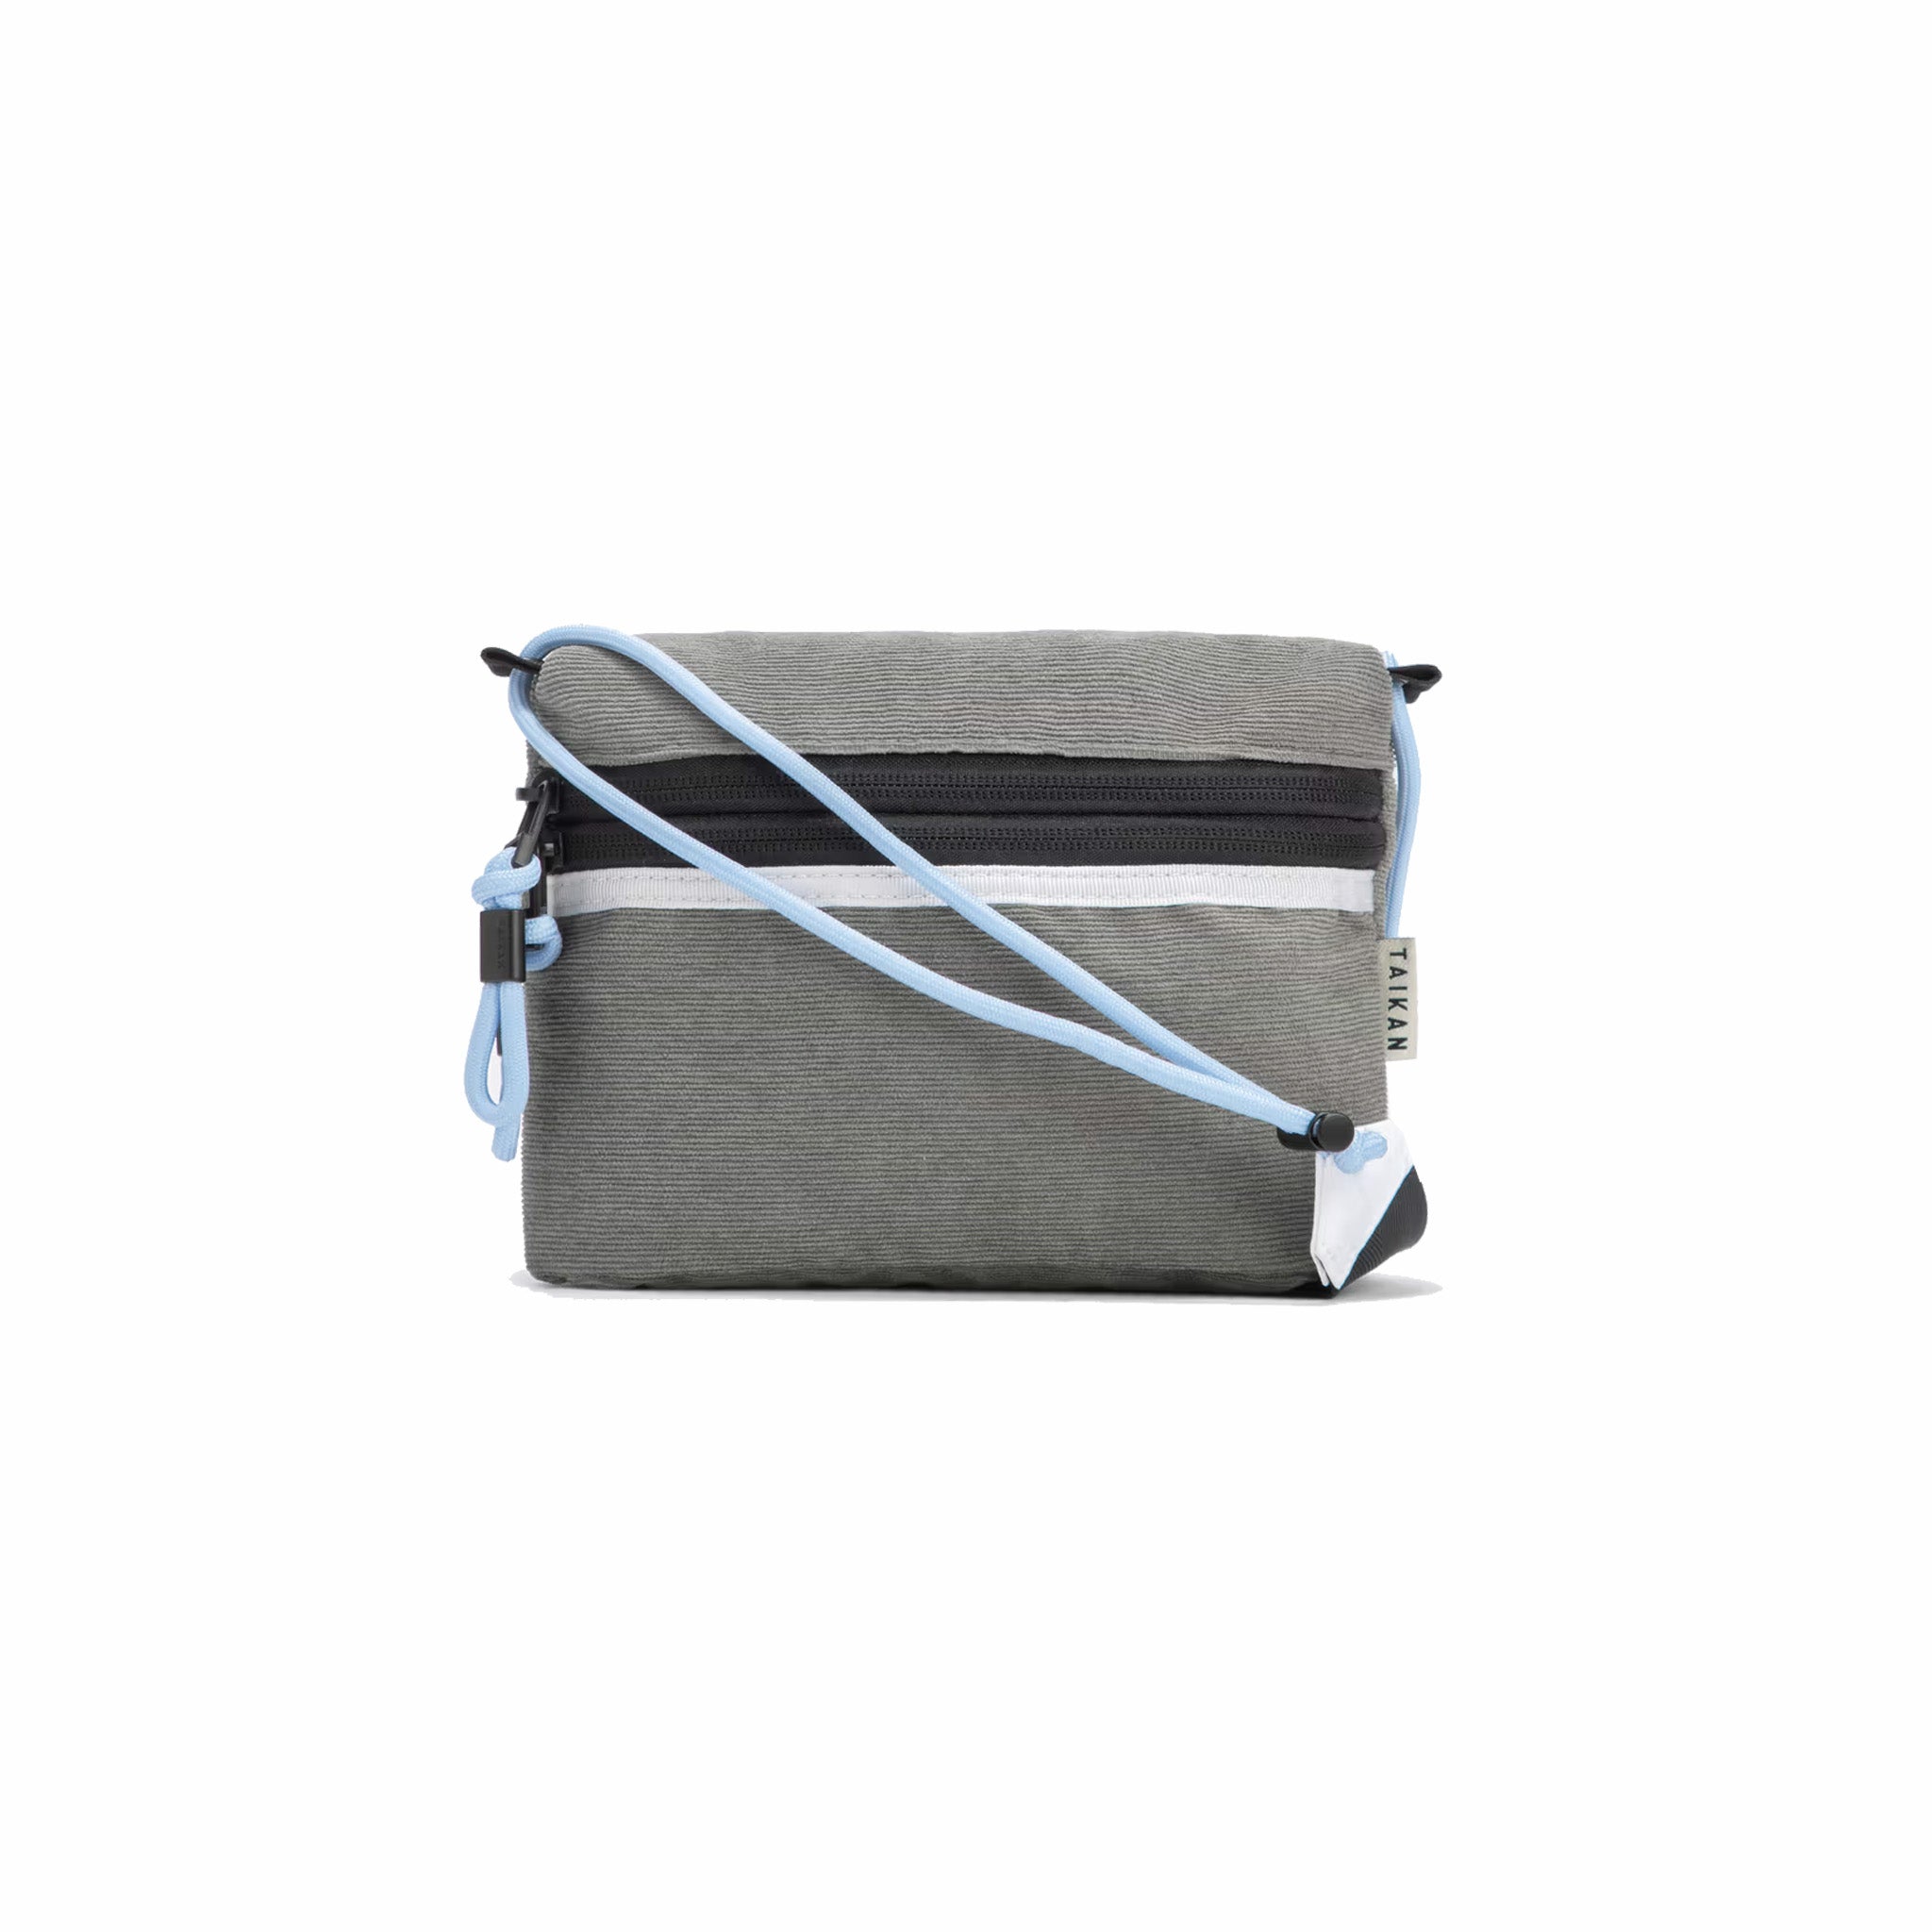 Taikan Sacoche Small Bag (Slate Corduroy) - August Shop